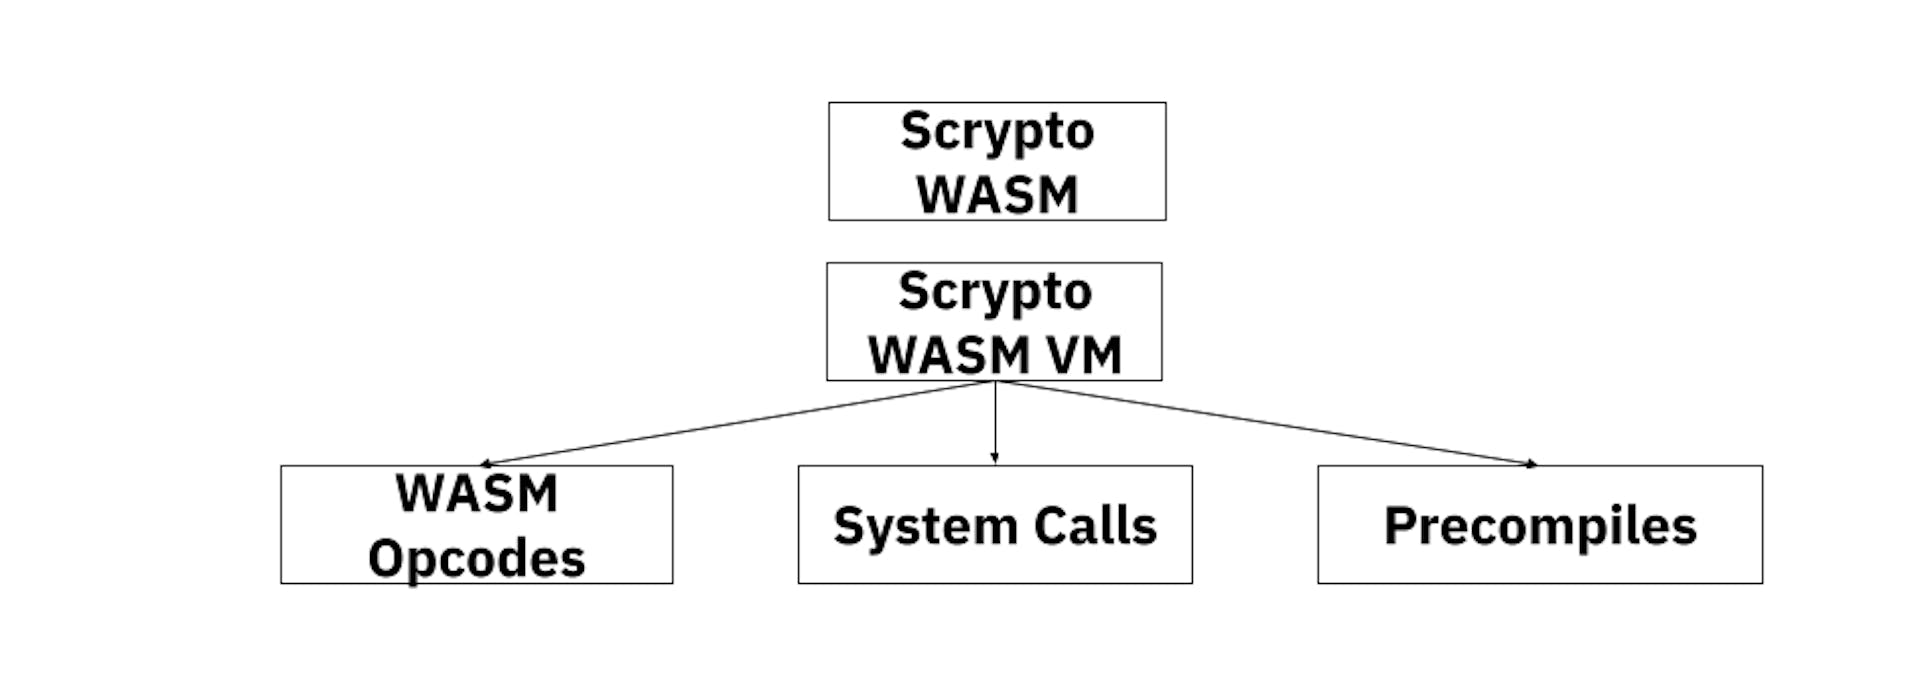 স্ক্রিপ্টো WASM VM মডেল